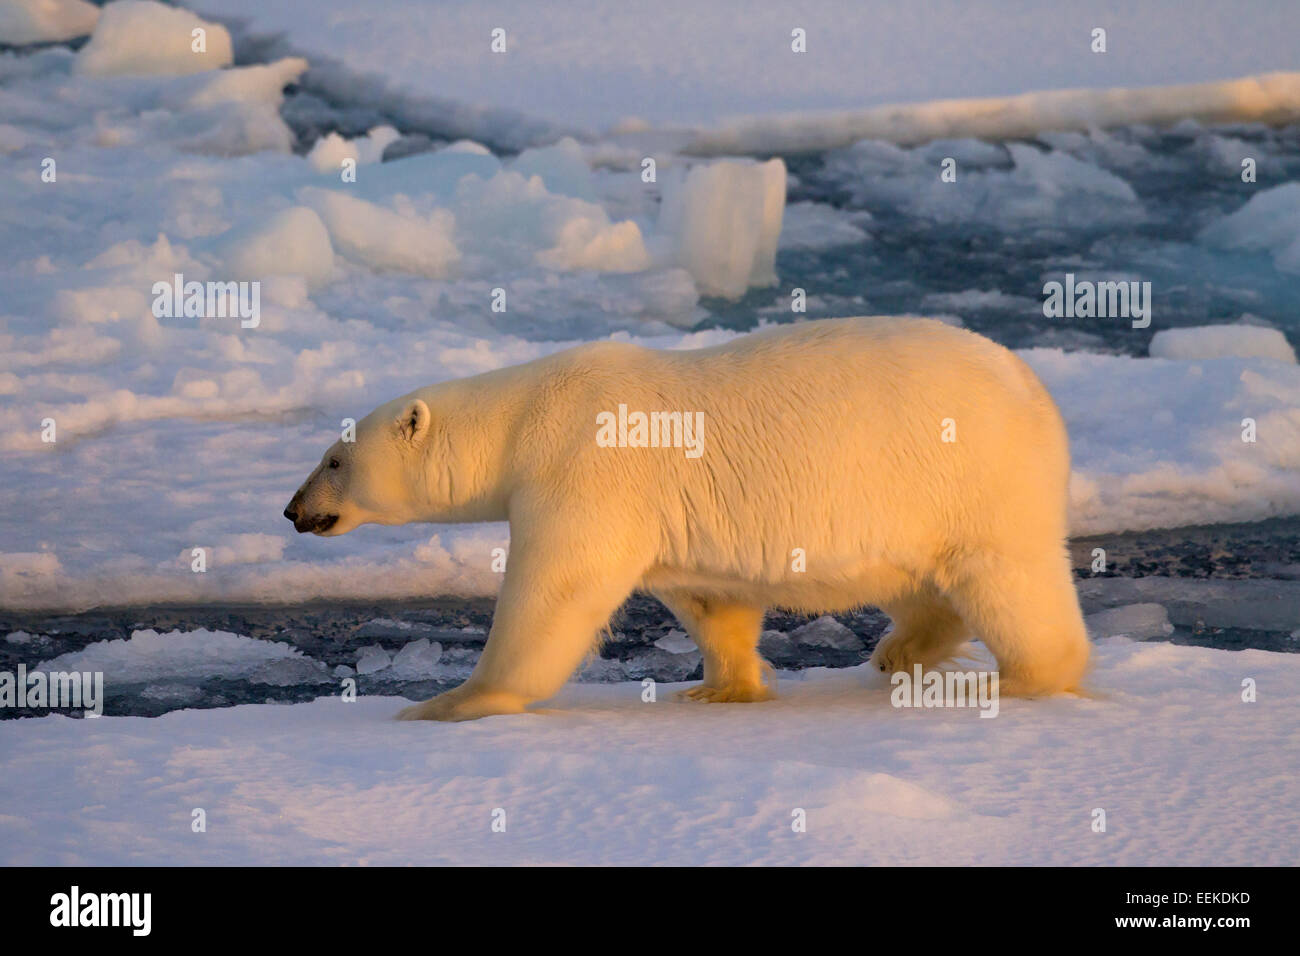 Polar bear (Ursus maritimus / Thalarctos maritimus) walking on pack ice at sunset, Svalbard, Norway Stock Photo